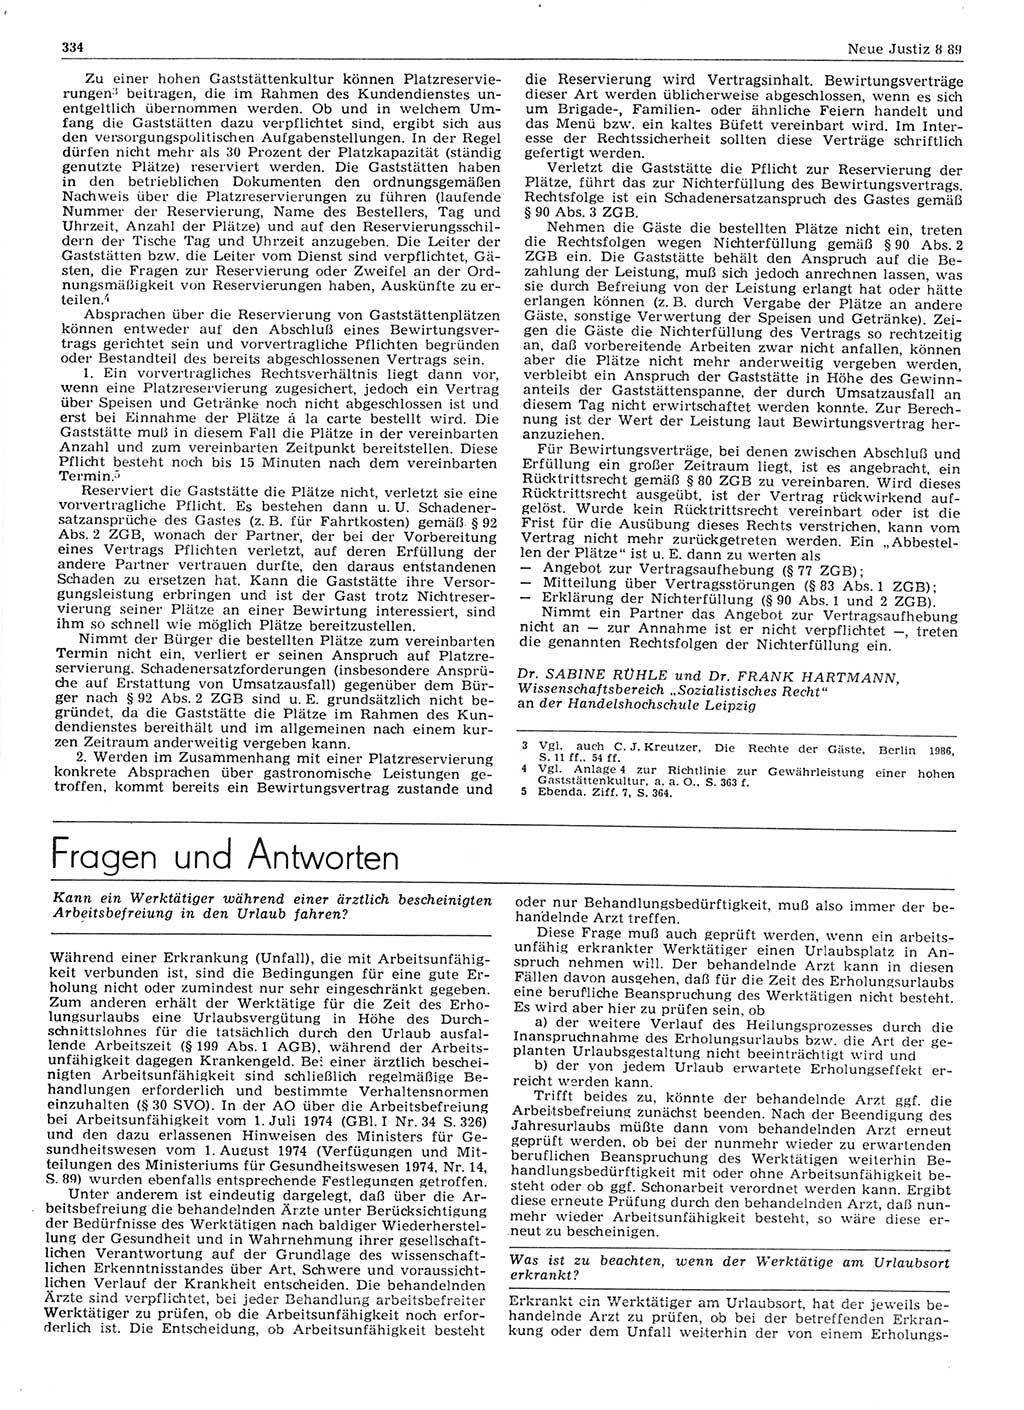 Neue Justiz (NJ), Zeitschrift für sozialistisches Recht und Gesetzlichkeit [Deutsche Demokratische Republik (DDR)], 43. Jahrgang 1989, Seite 334 (NJ DDR 1989, S. 334)